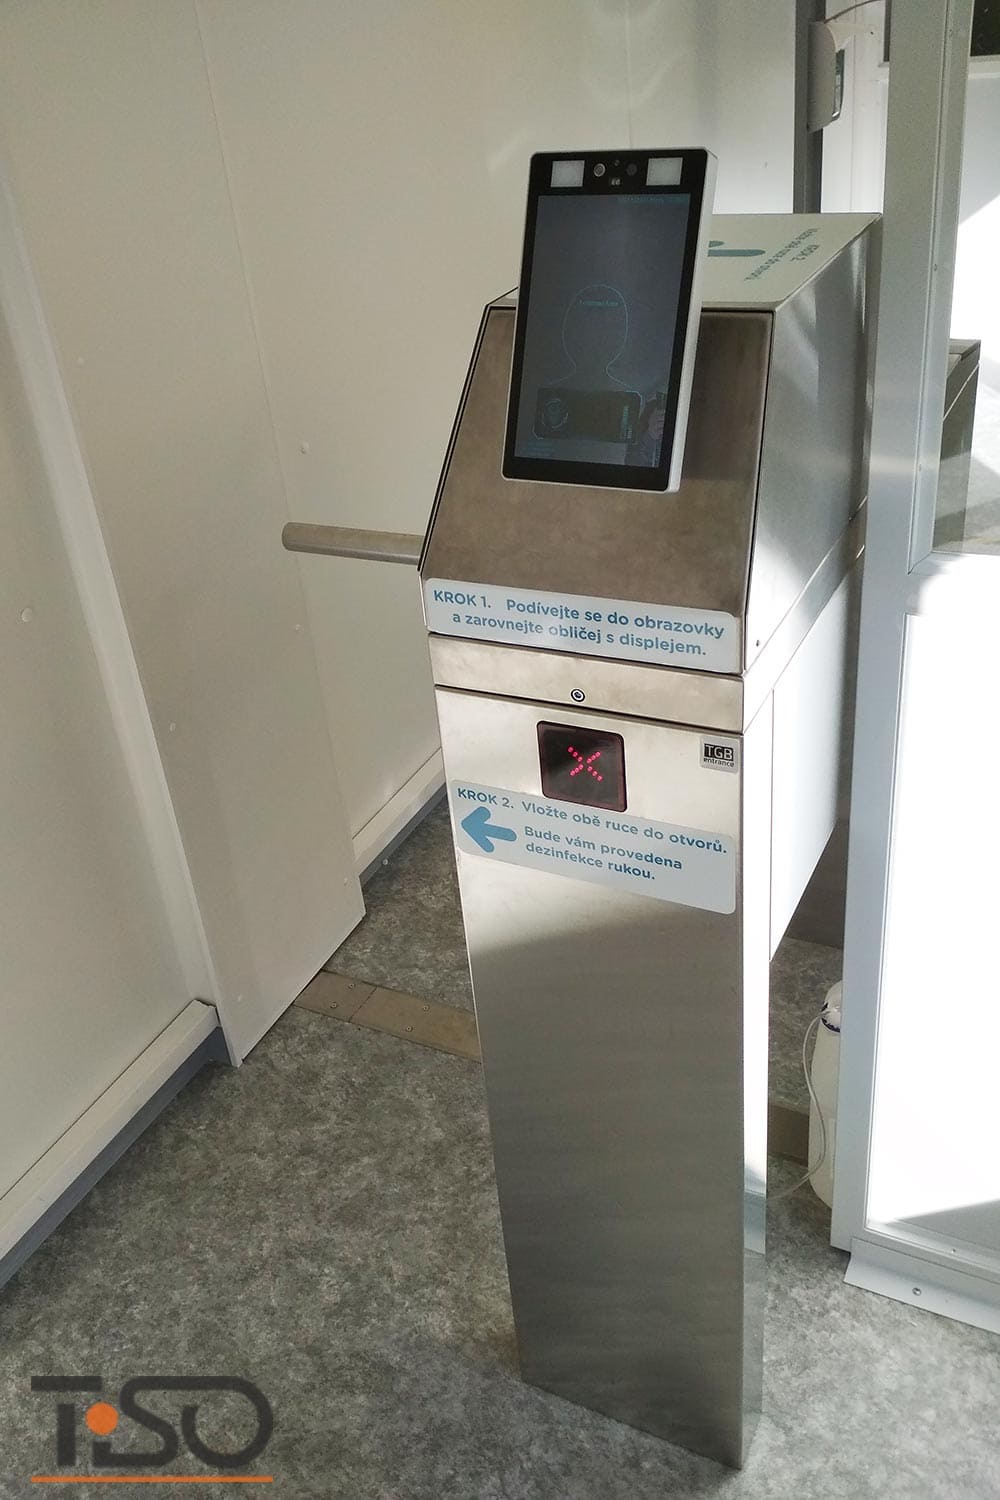 Twix-M e sistema automático de desinfecção das mãos, hospital Horovice, República Tcheca